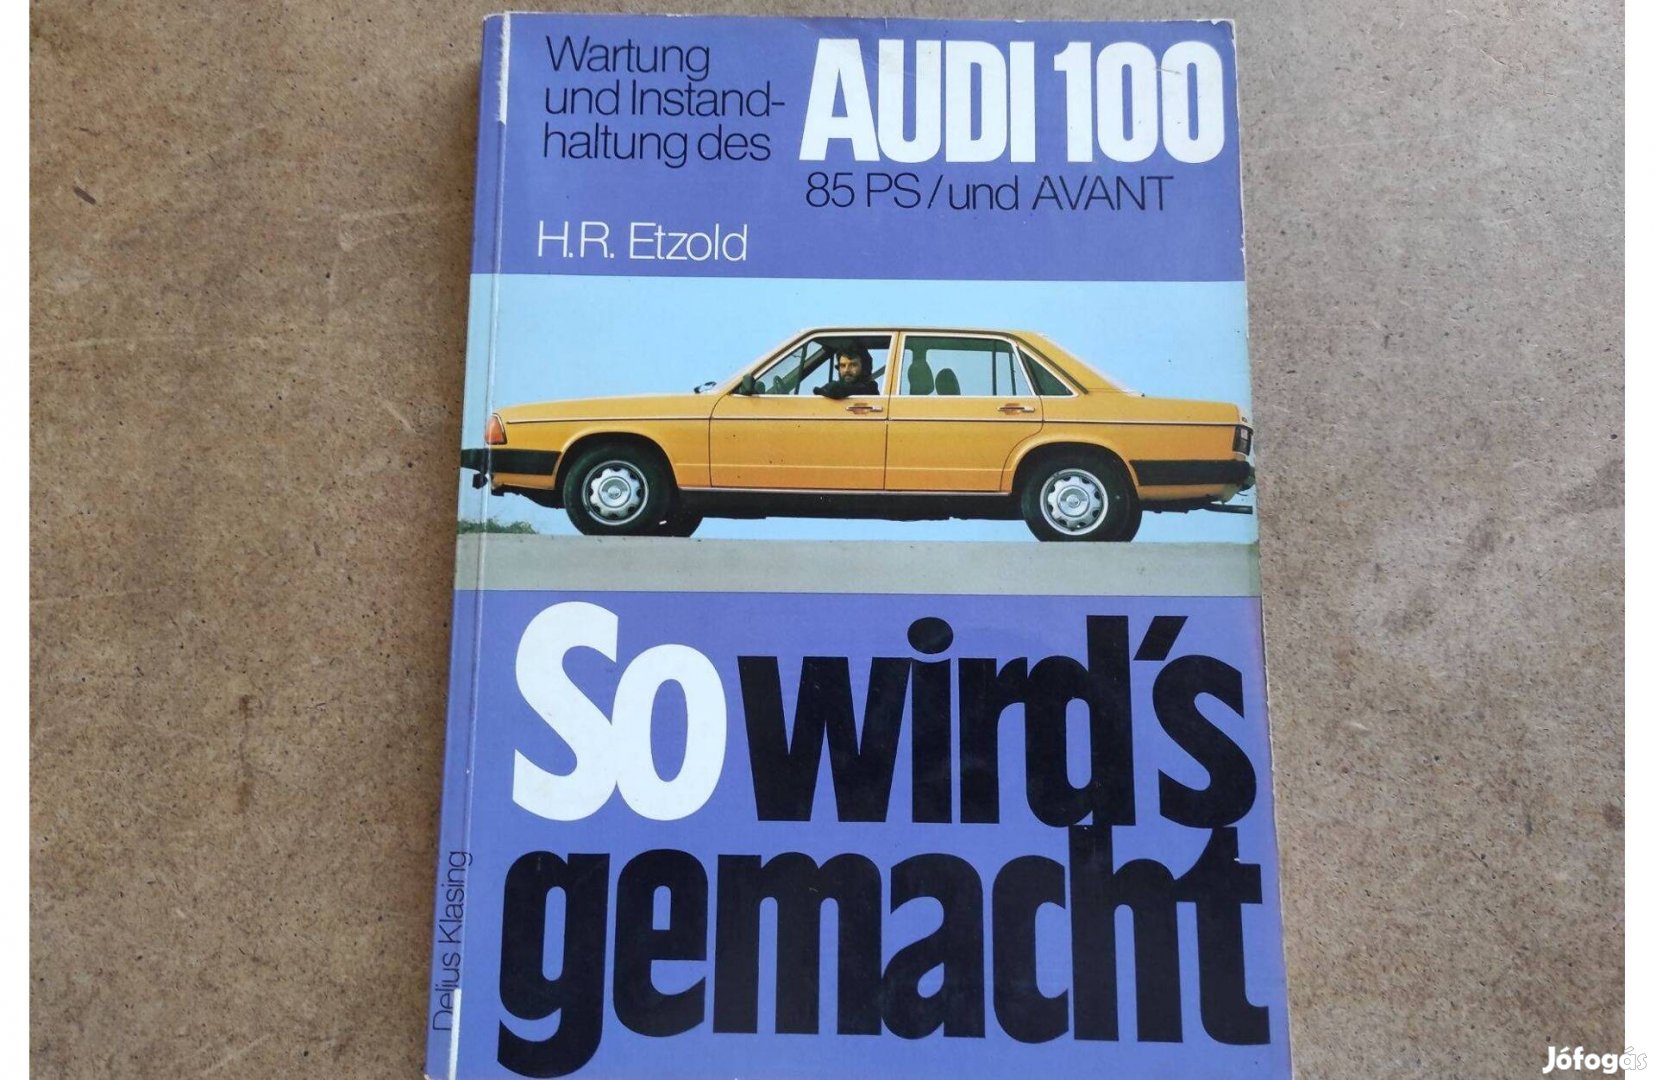 Audi 100 javítási karbantartási könyv